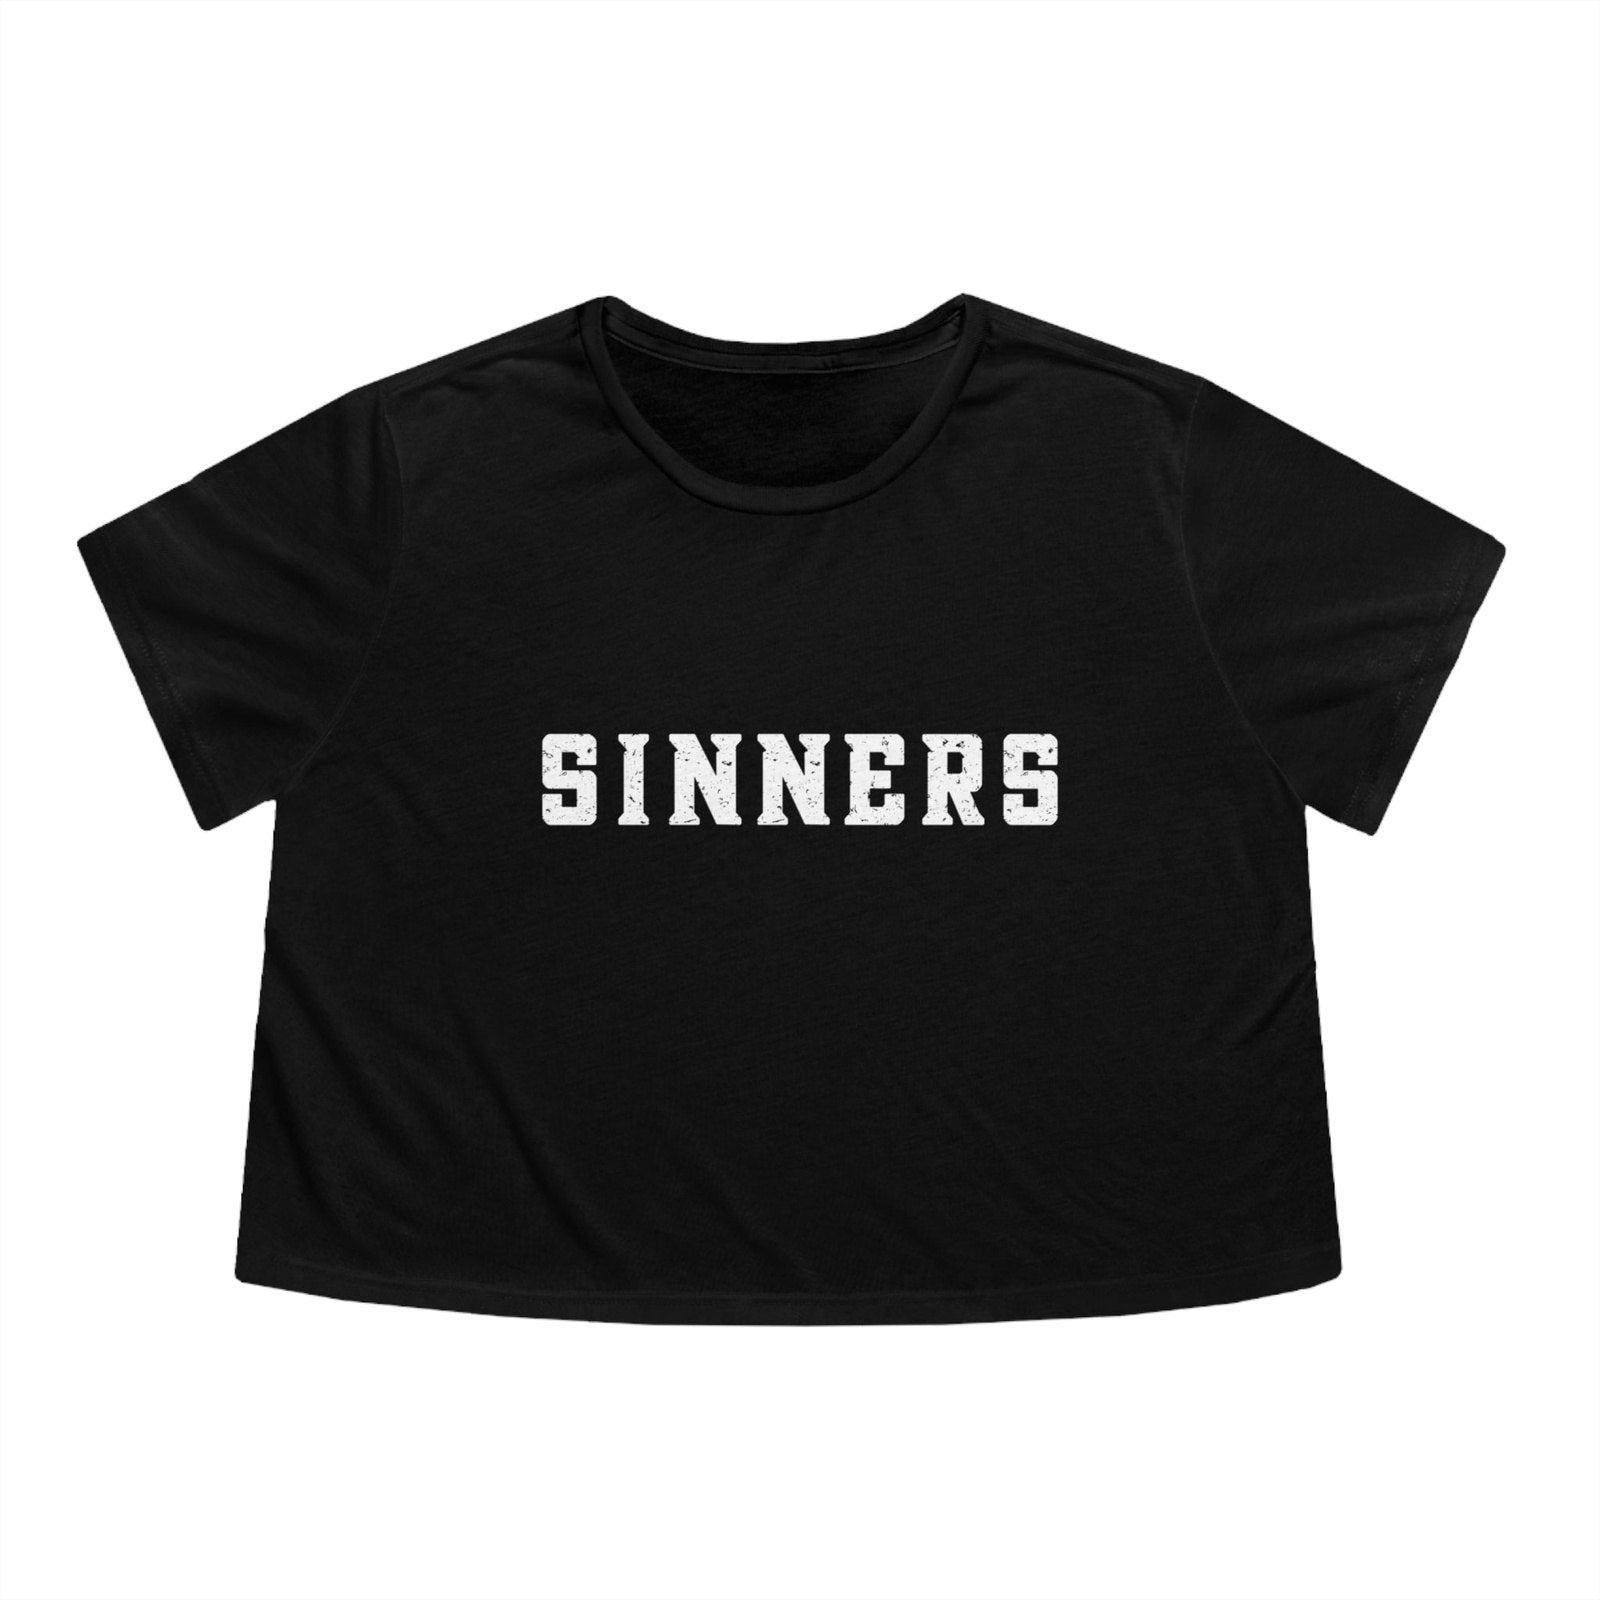 Sinners Crop Top